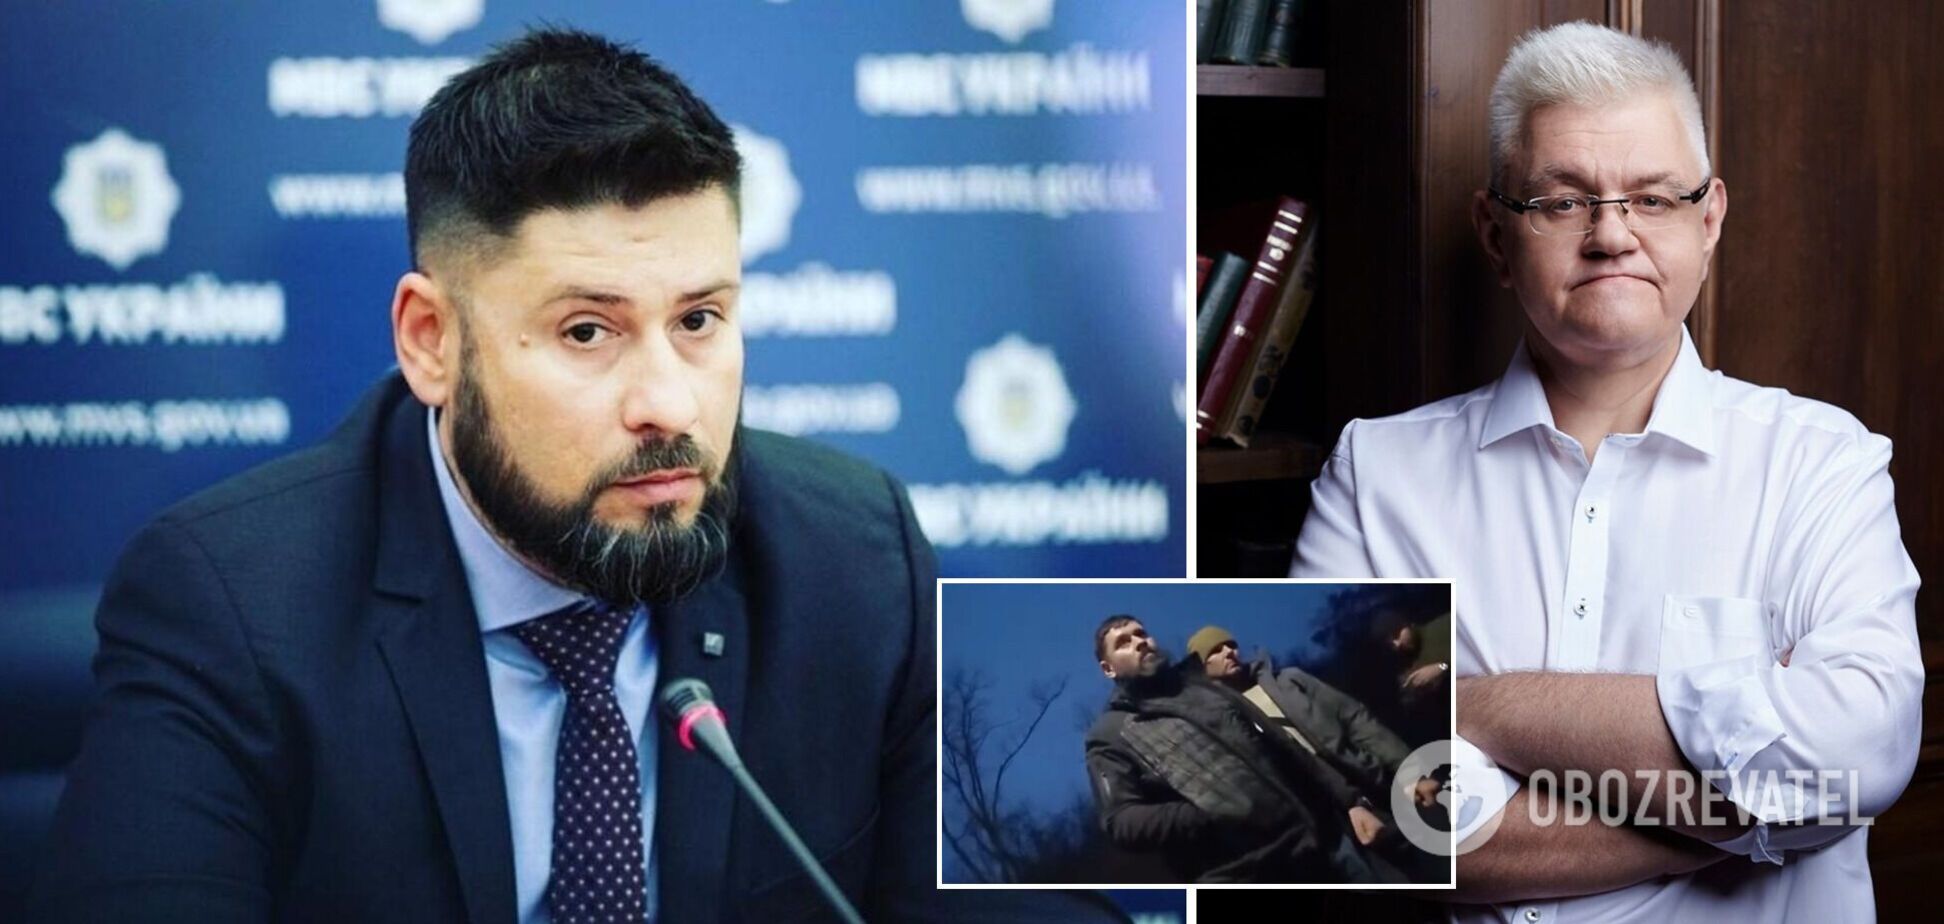 Сивохо заступился за Гогилашвили после скандала: я знал его только с хорошей стороны. Видео